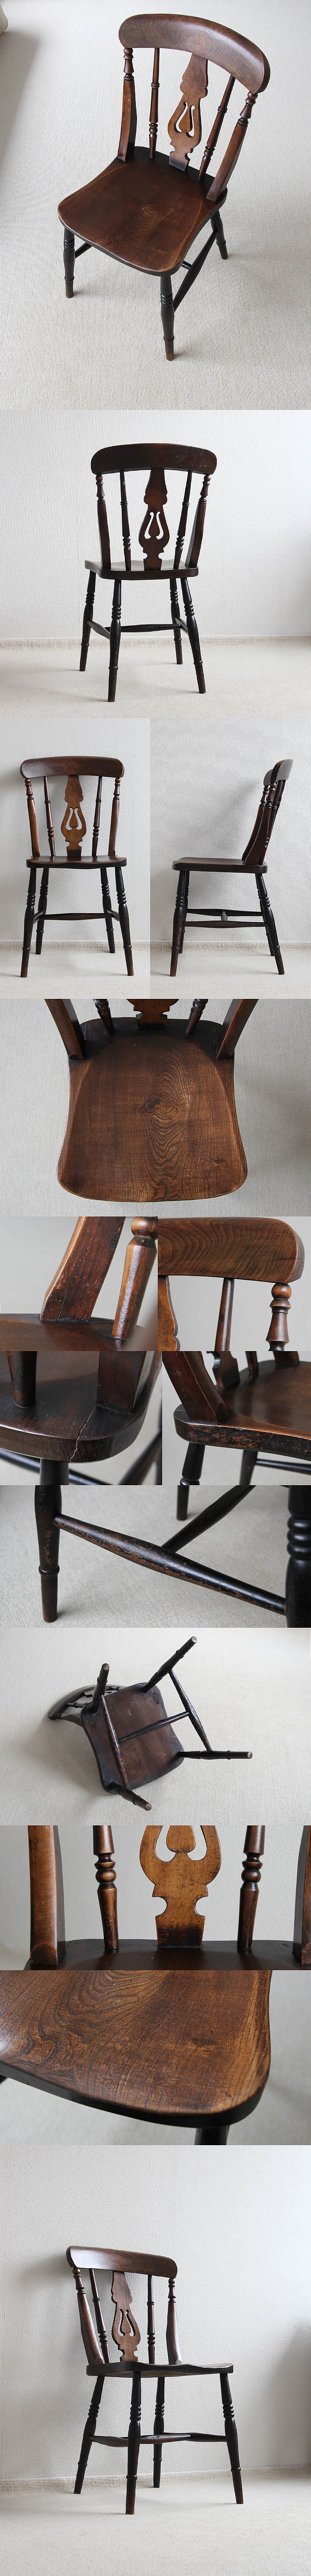 イギリス アンティーク キッチンチェア 古木 木製椅子 家具 インテリア「一枚板座面」P-091